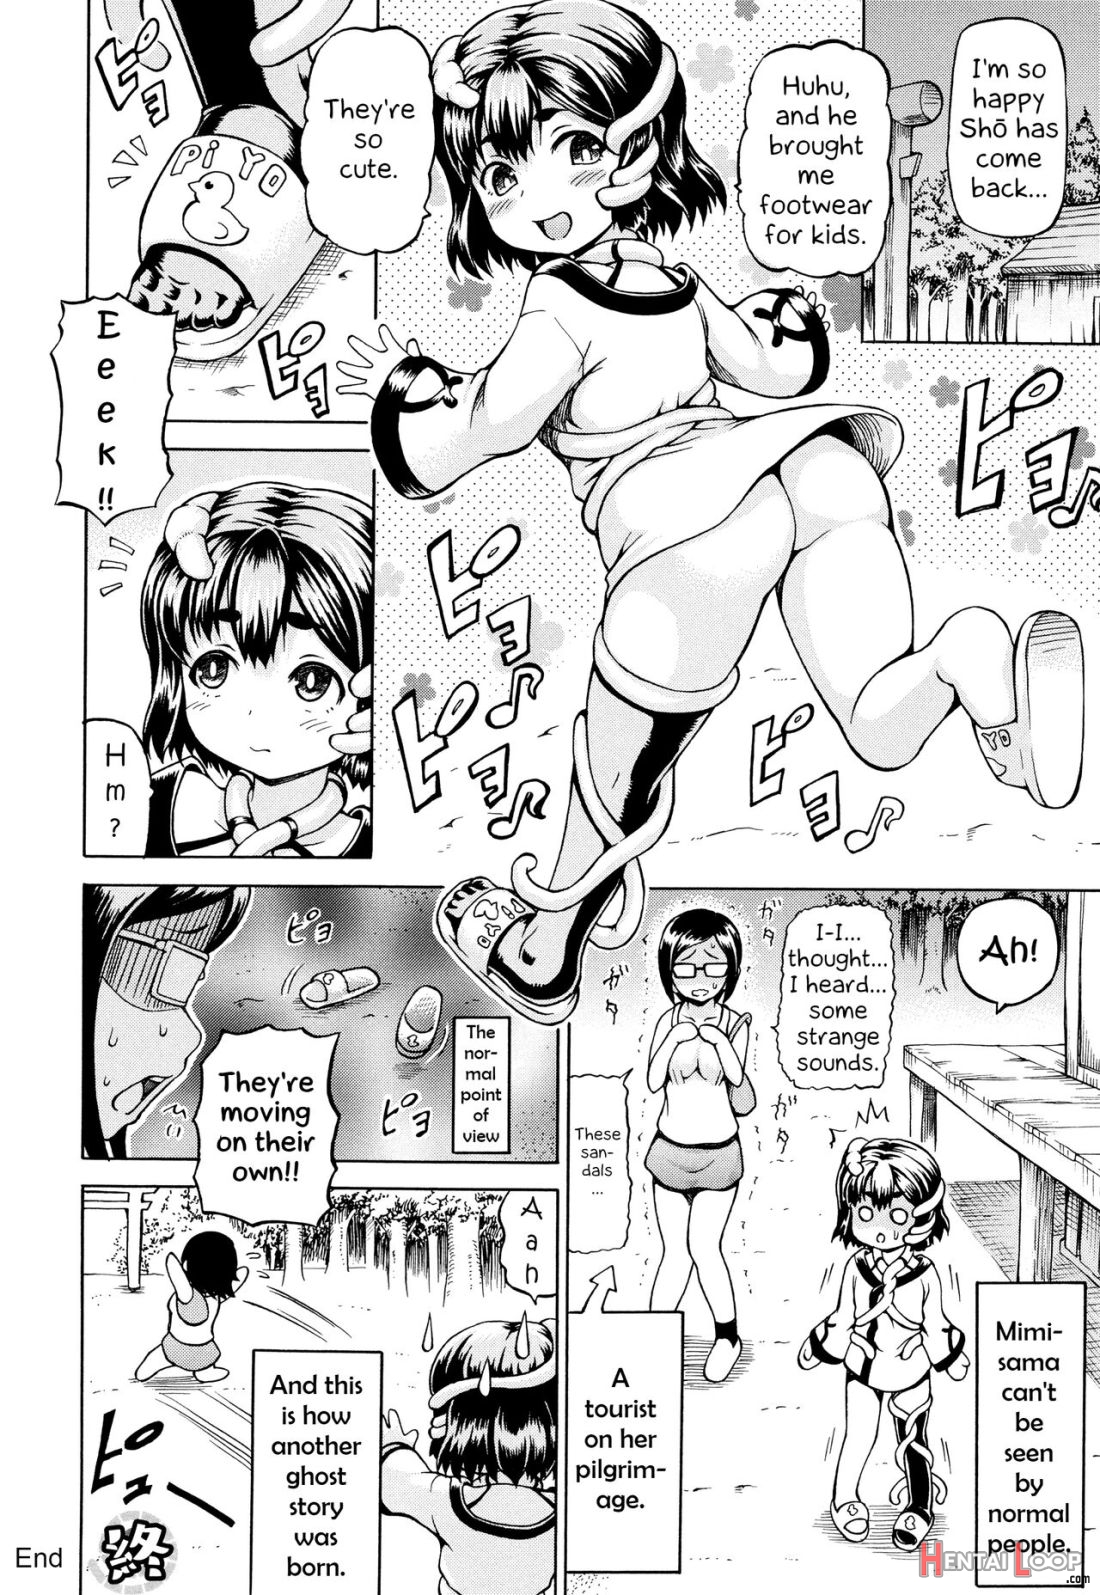 Mimi-sama Okkiku Shite! page 187